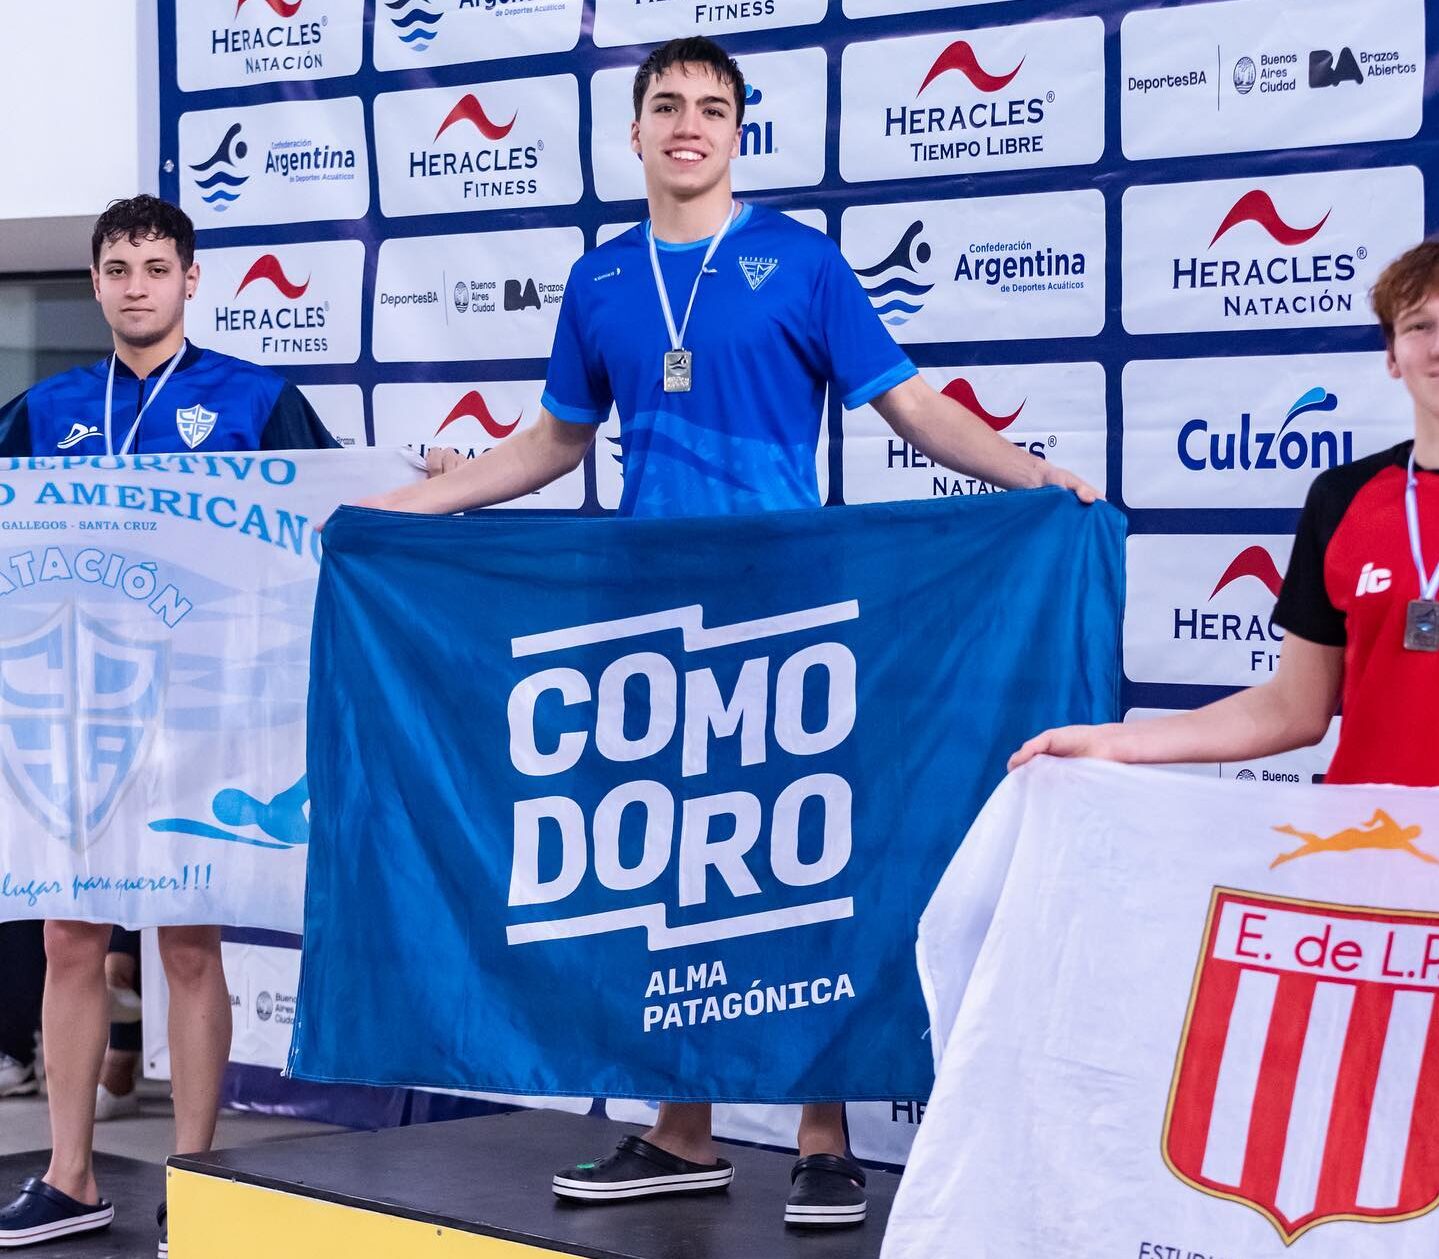 Mateo Luna Assef y Bautista Soria brillaron en el Campeonato Argentino de natación